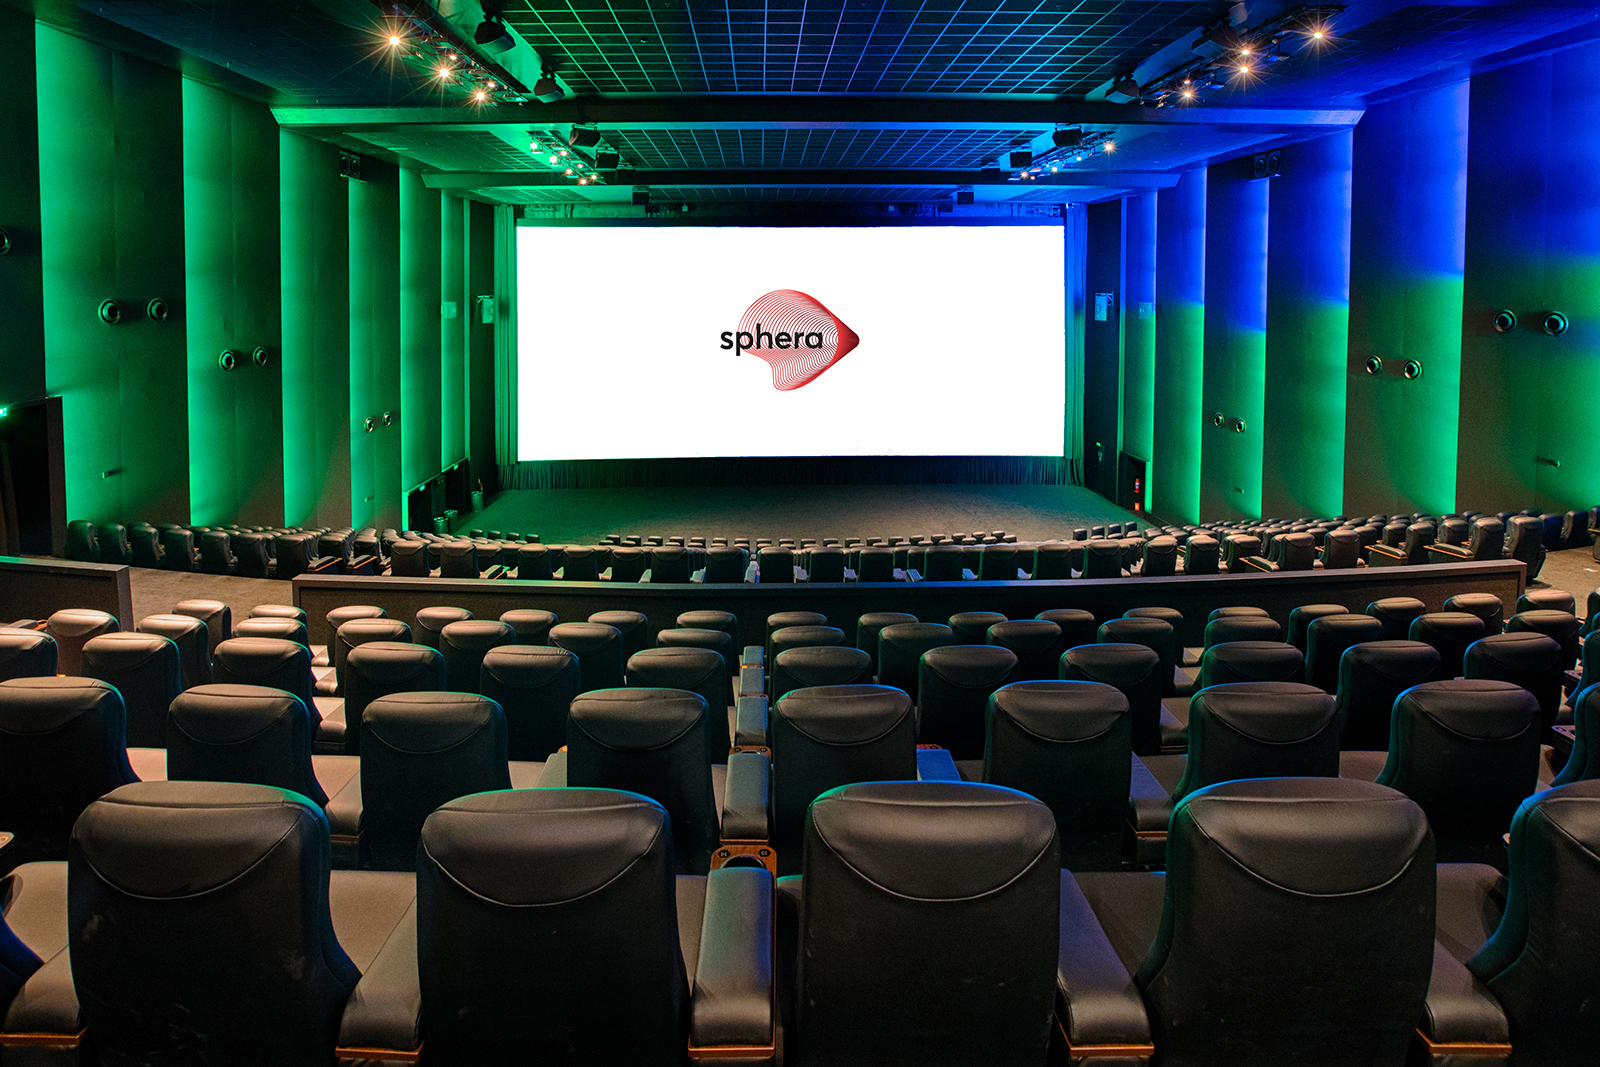 Sala de cine premium Sphera instalada por CinemaNext de Ymagis